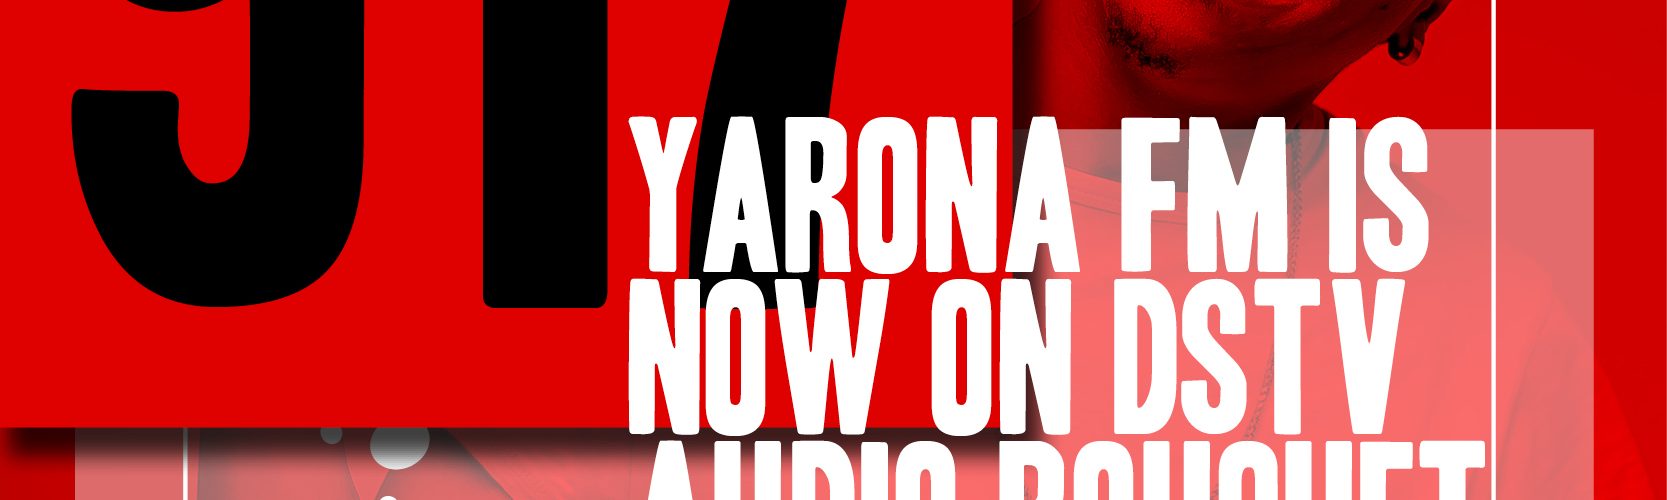 Press: Yarona FM now on DStv Audio Bouquet